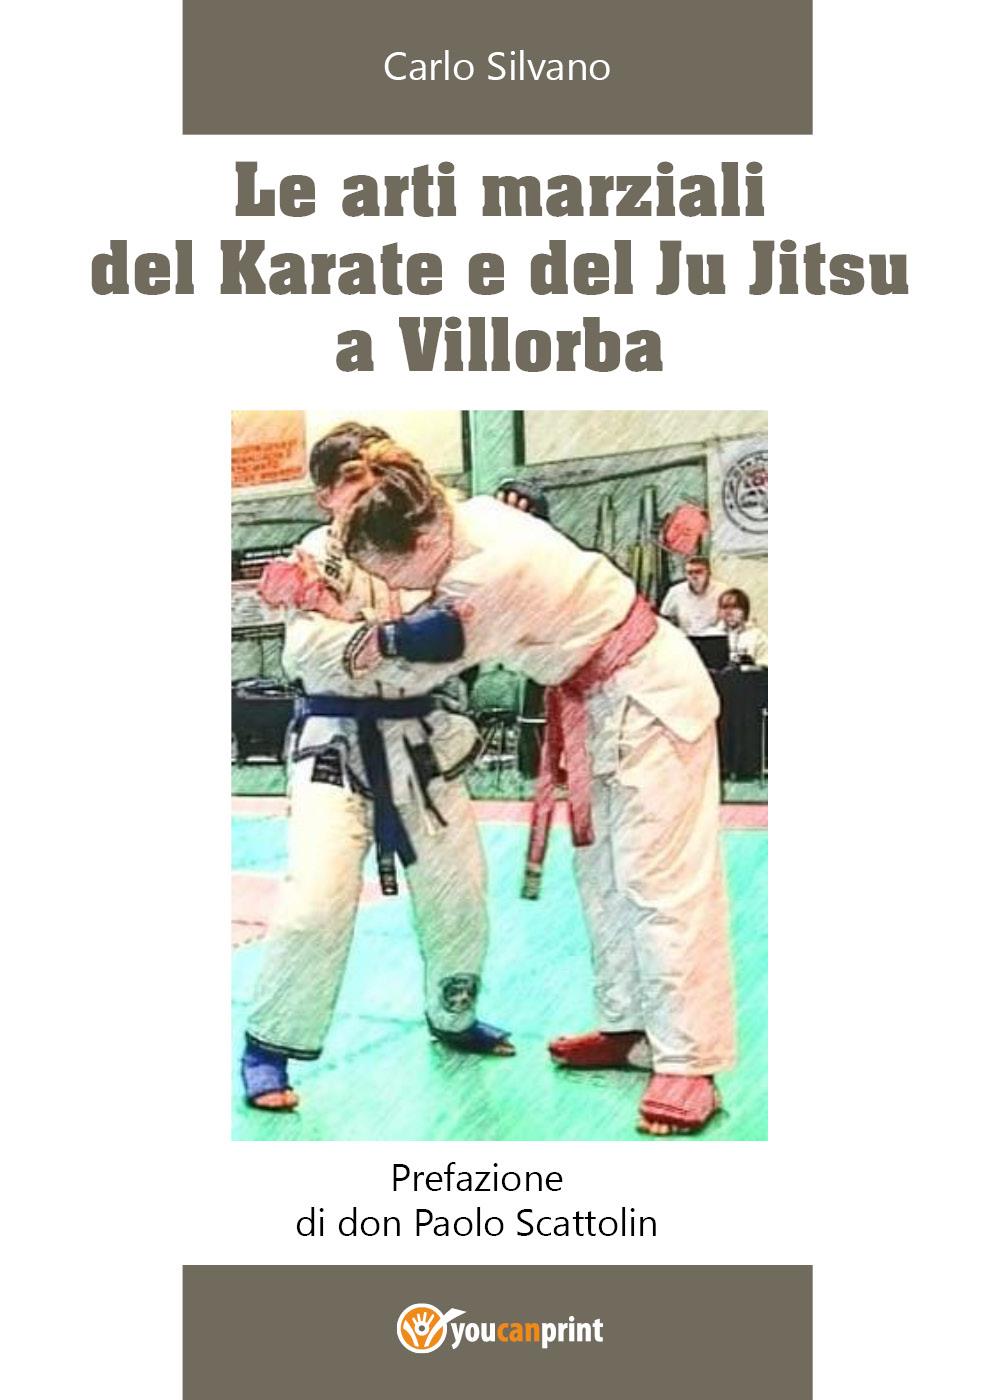 Le arti marziali del Karate e del Ju Jitsu a Villorba